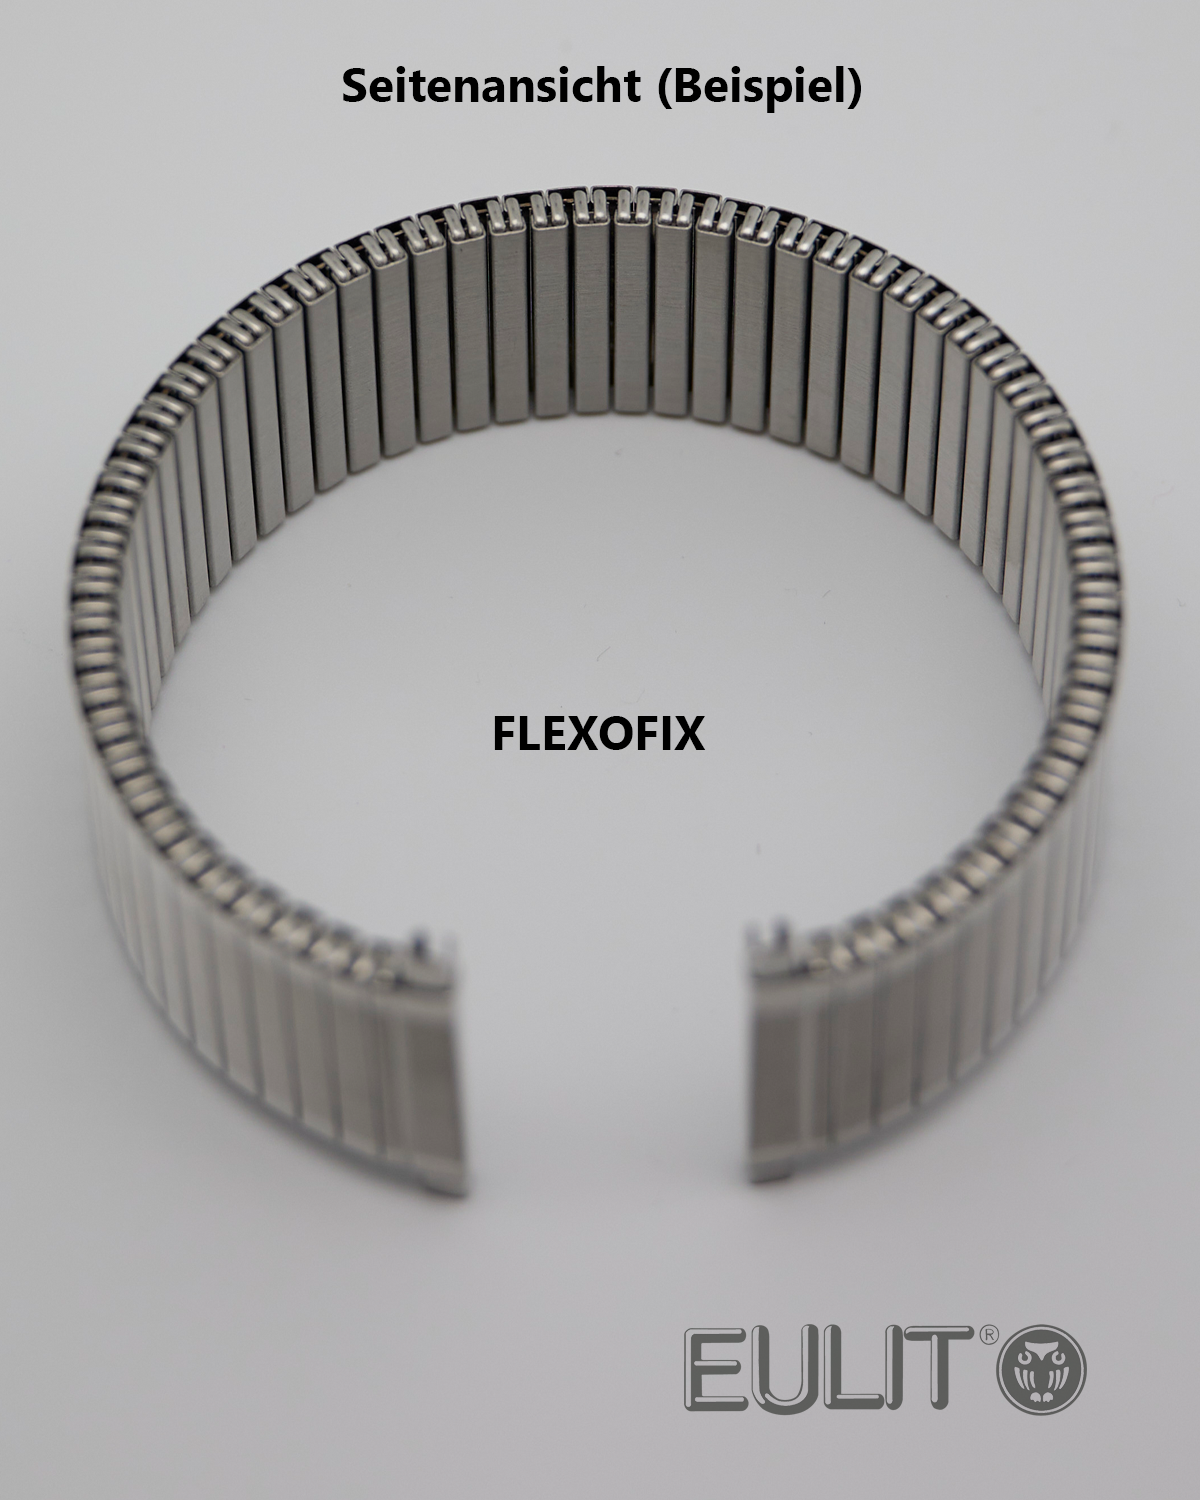 76-420002 EULIT FLEXOFIX 14-16 mm Edelstahl